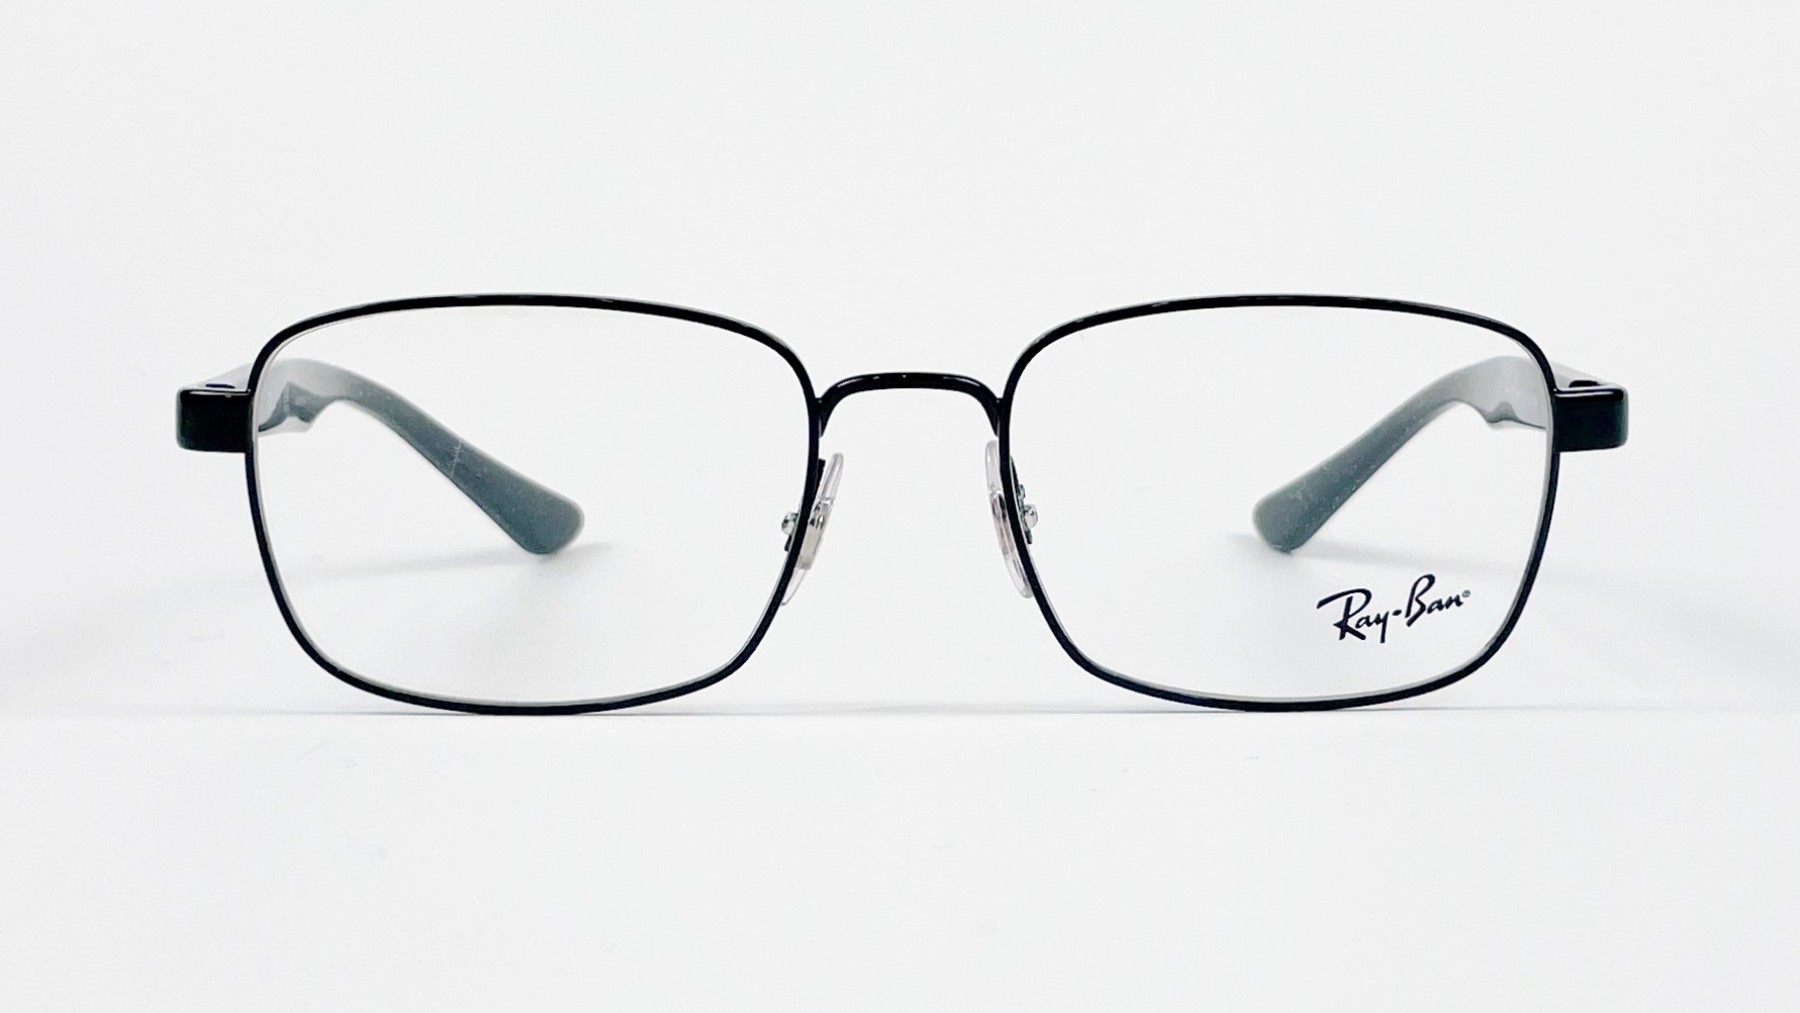 RayBan RB6445 2509, Korean glasses, sunglasses, eyeglasses, glasses